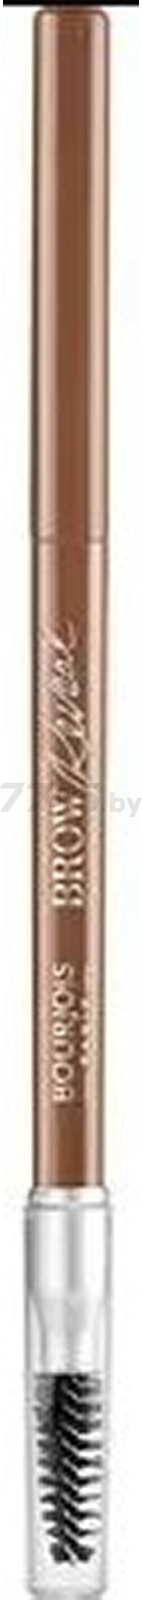 Карандаш для бровей BOURJOIS Brow Reveal Automatic Brow Pencil тон 002 (3614226956316)